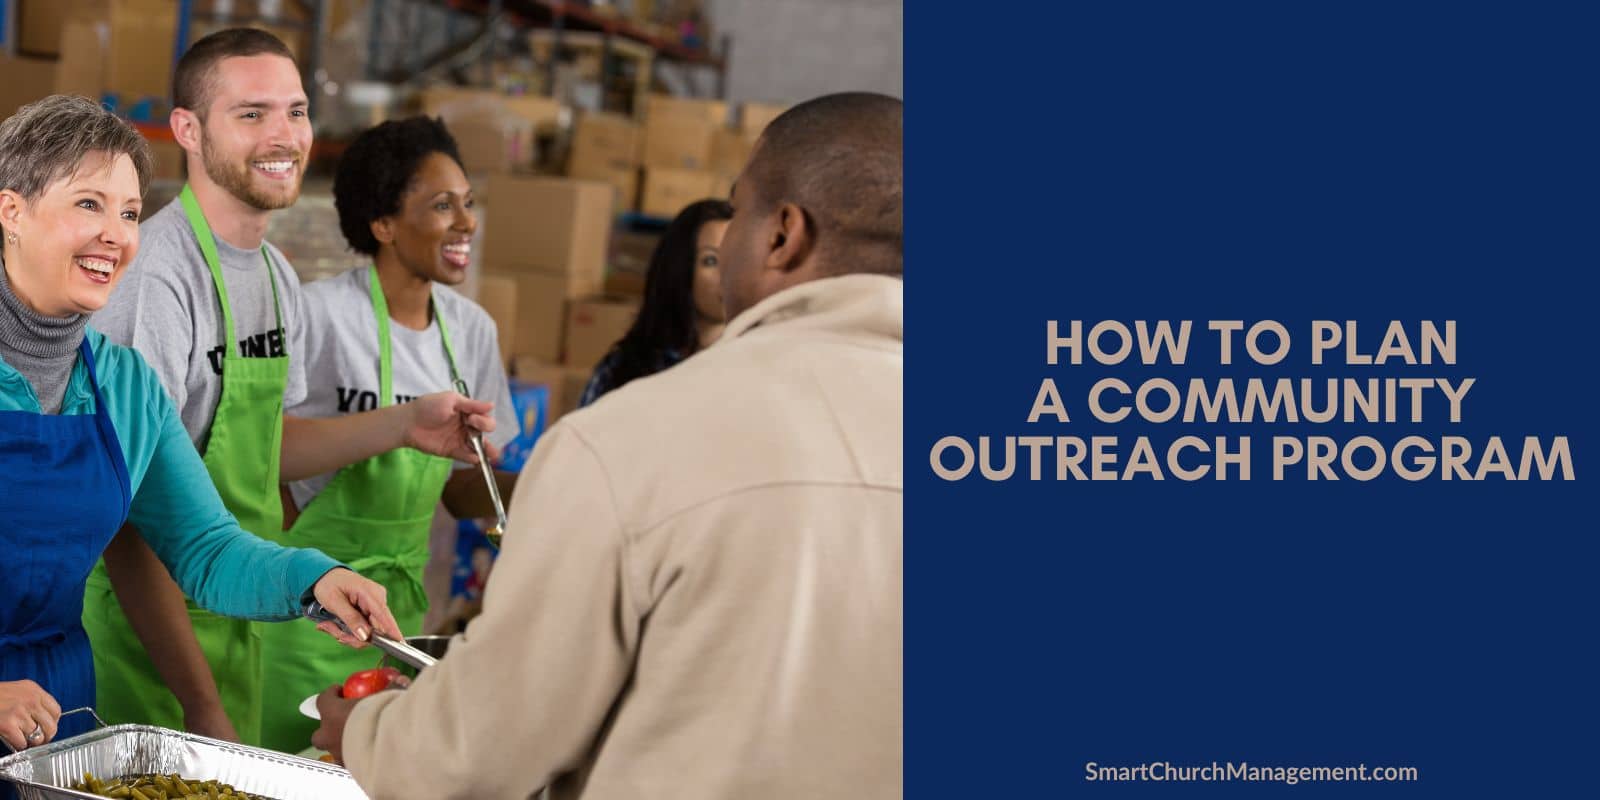 How to plan a community outreach program